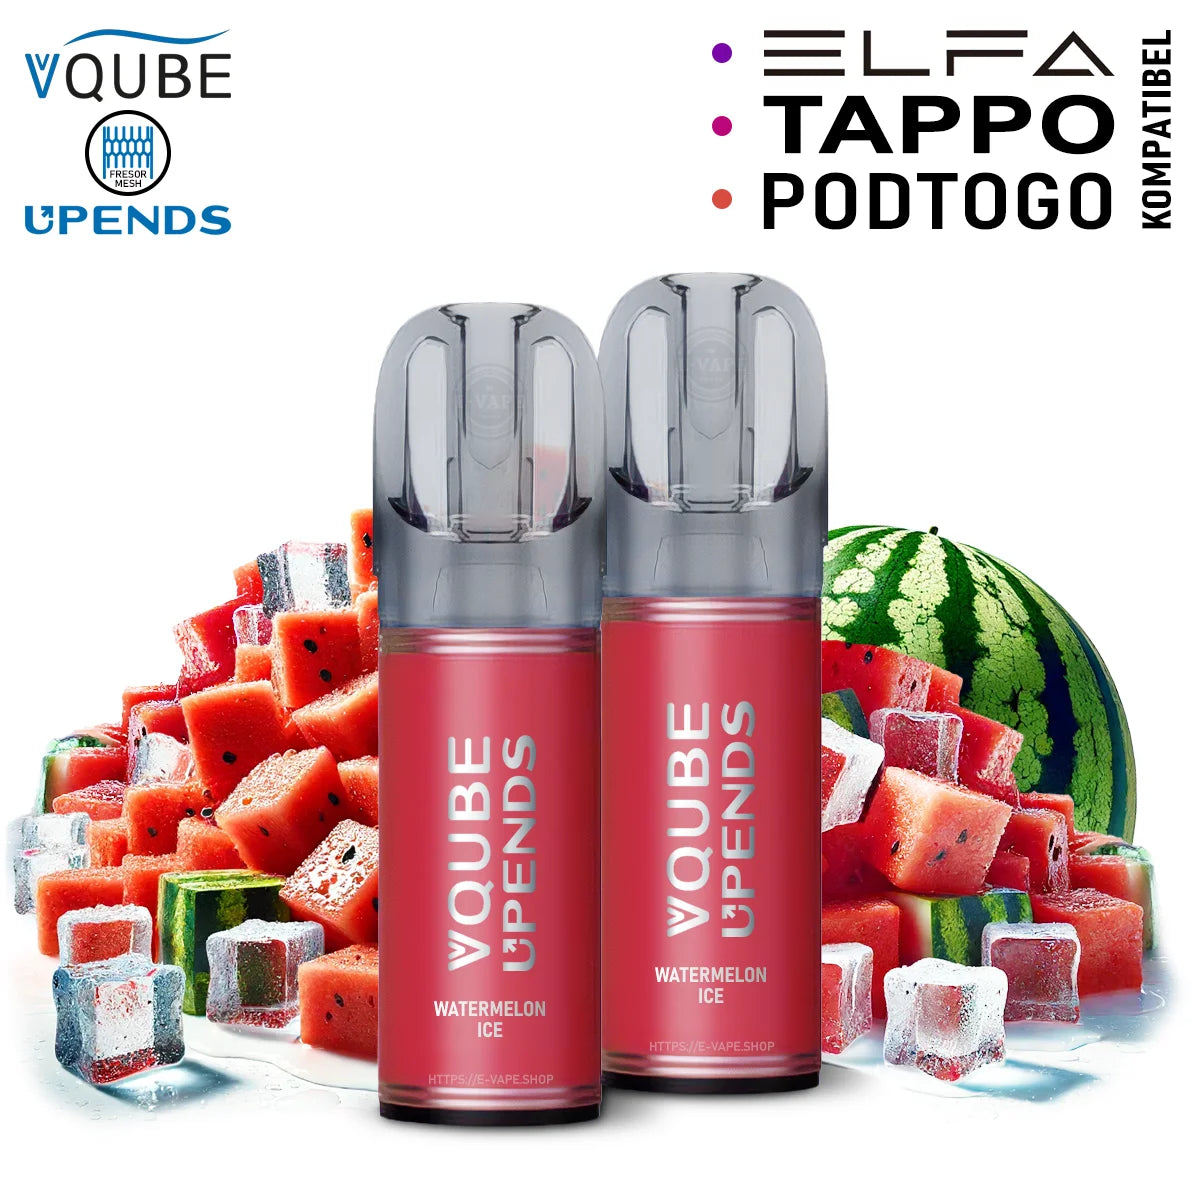 Vqube Upends Pod Watermelon Ice 20mg ELFA / Tappo / Pod2Go